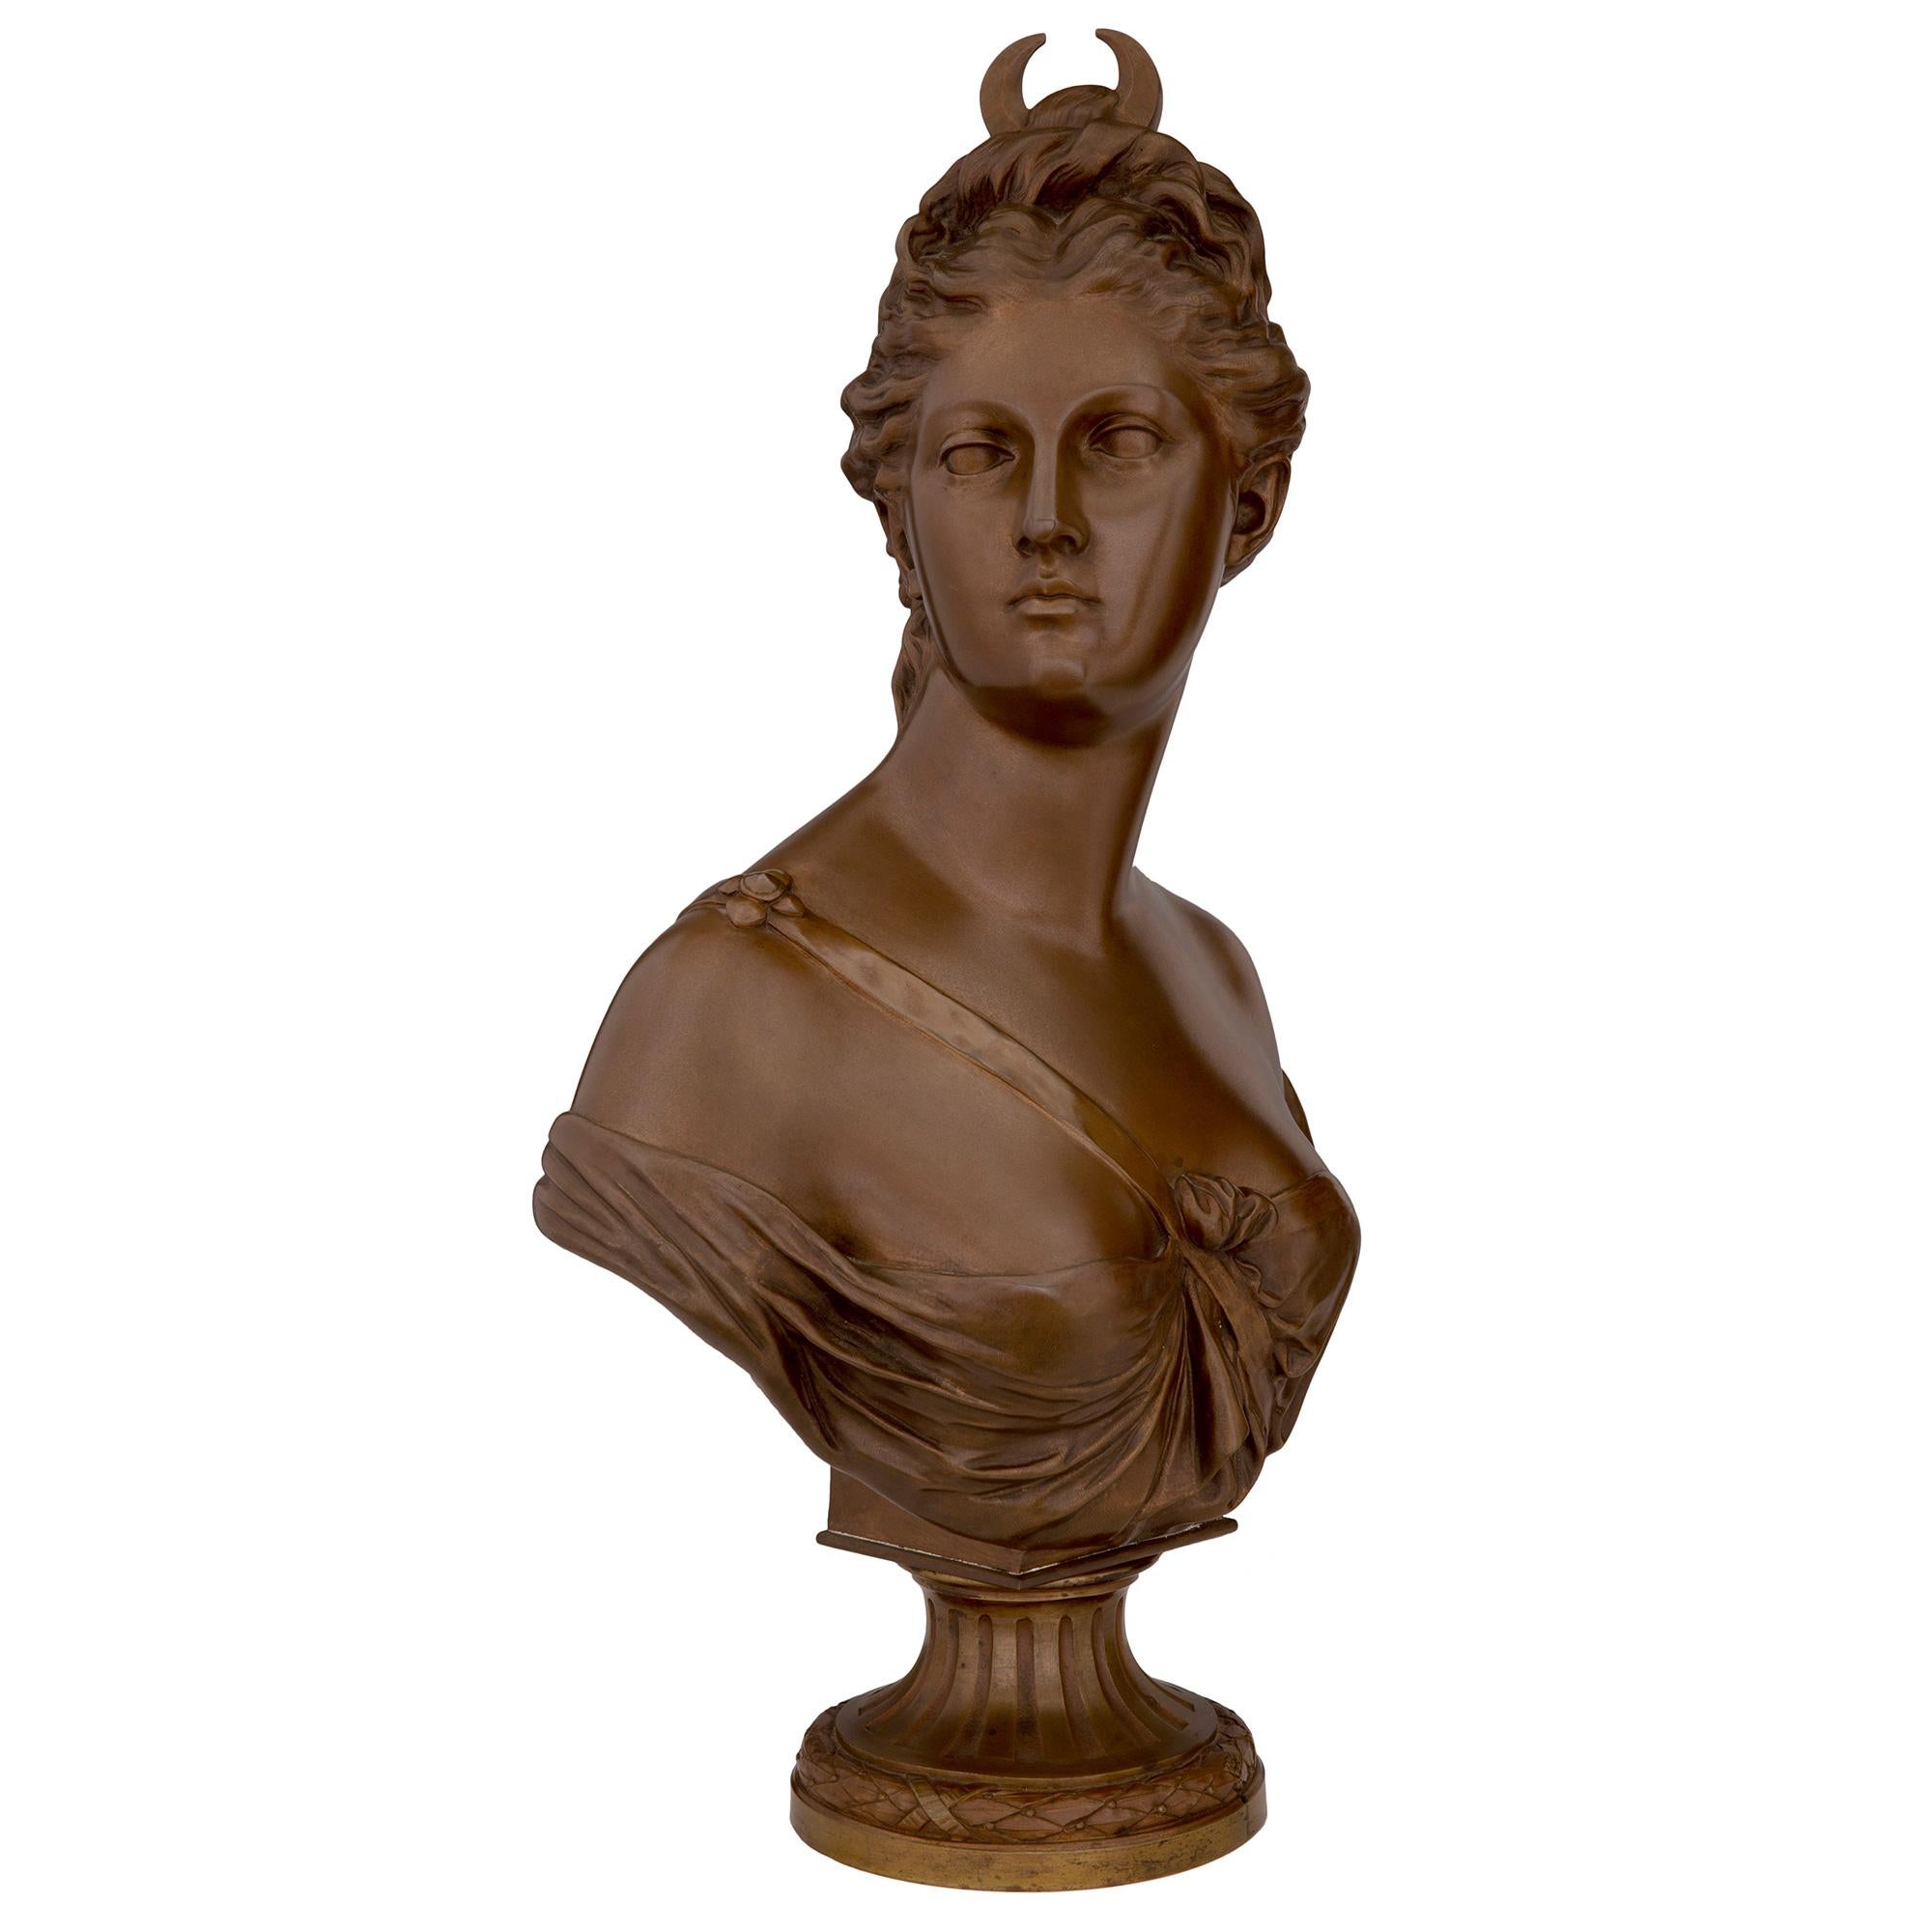 Superbe buste de Diane chasseresse en bronze patiné de style Louis XVI, signé HOUDON et SUSSE Frères, datant du milieu du XIXe siècle. Le buste est surmonté d'une base circulaire dotée d'un fin bandeau de laurier enrubanné et d'un socle cannelé.